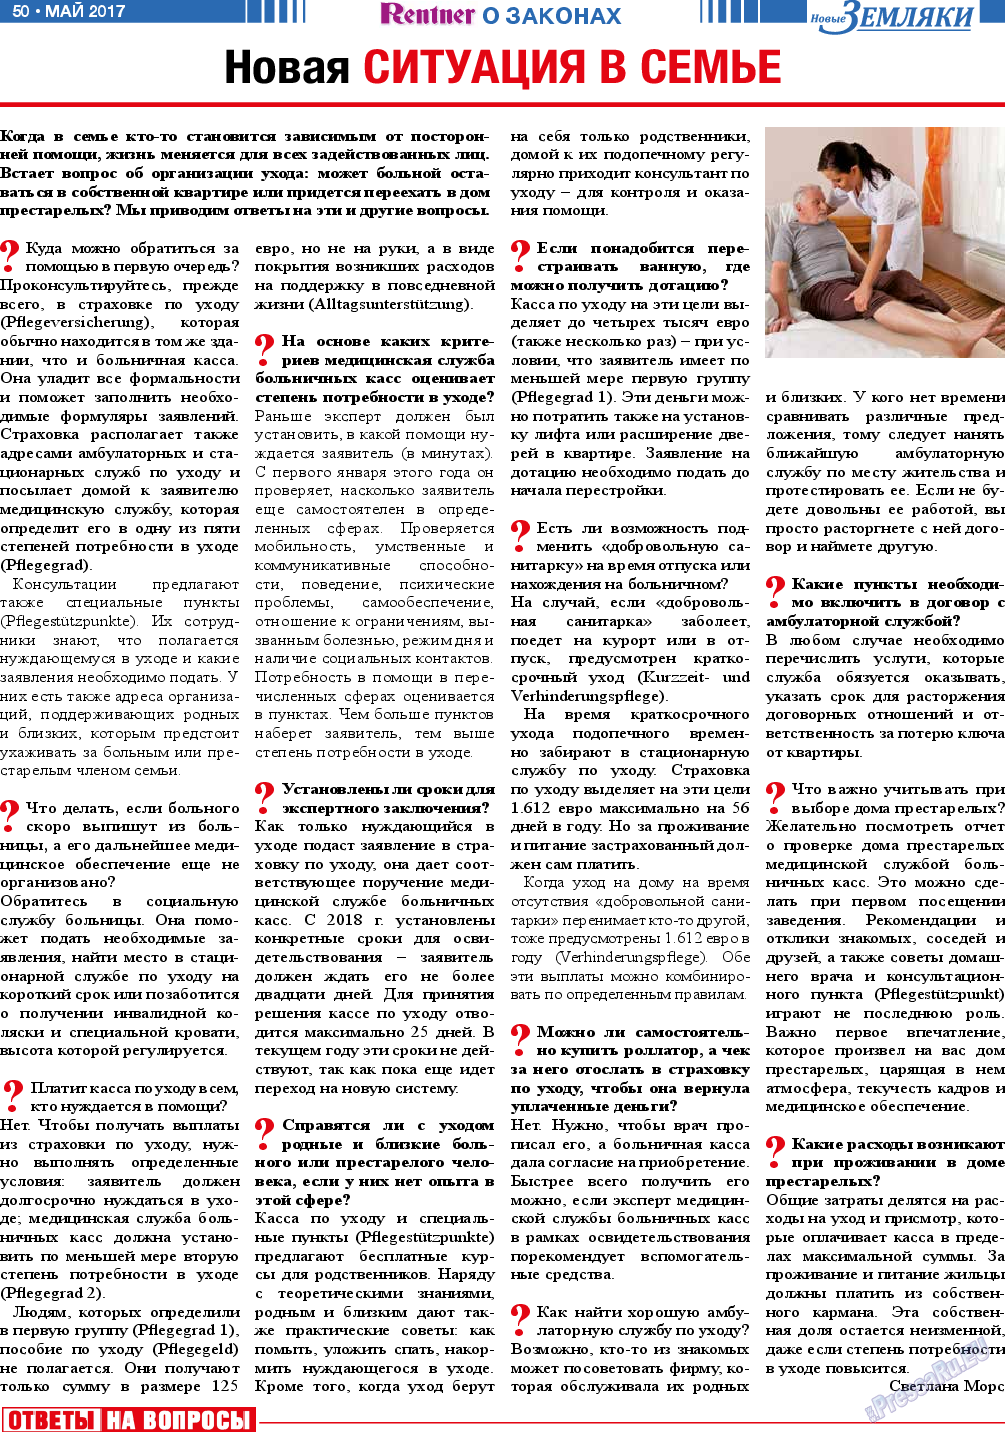 Новые Земляки (газета). 2017 год, номер 5, стр. 50